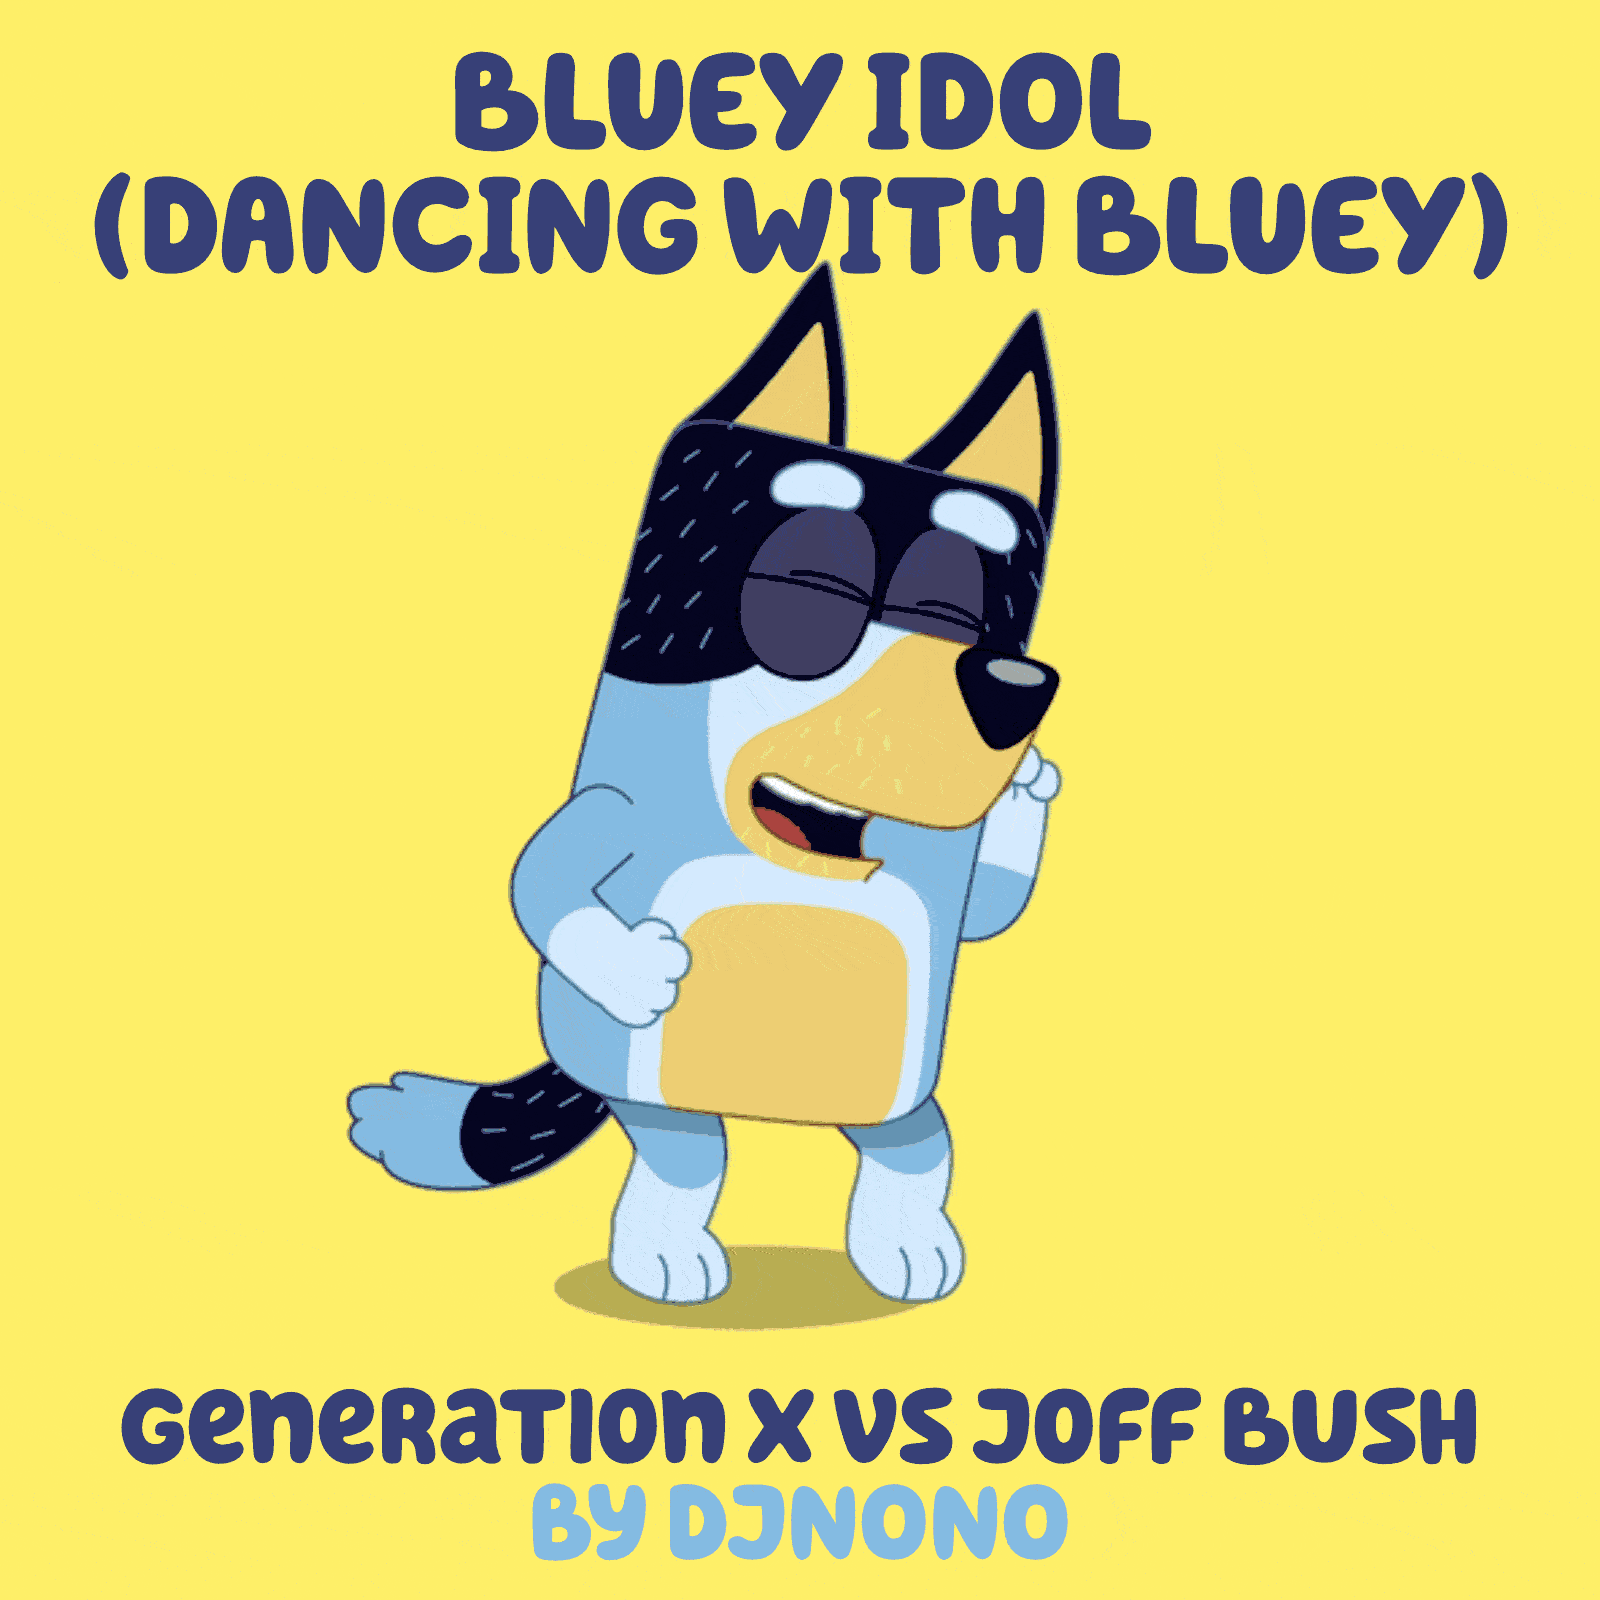 Bluey Mashup: Billy Idol vs Joff Bush – DJNoNo